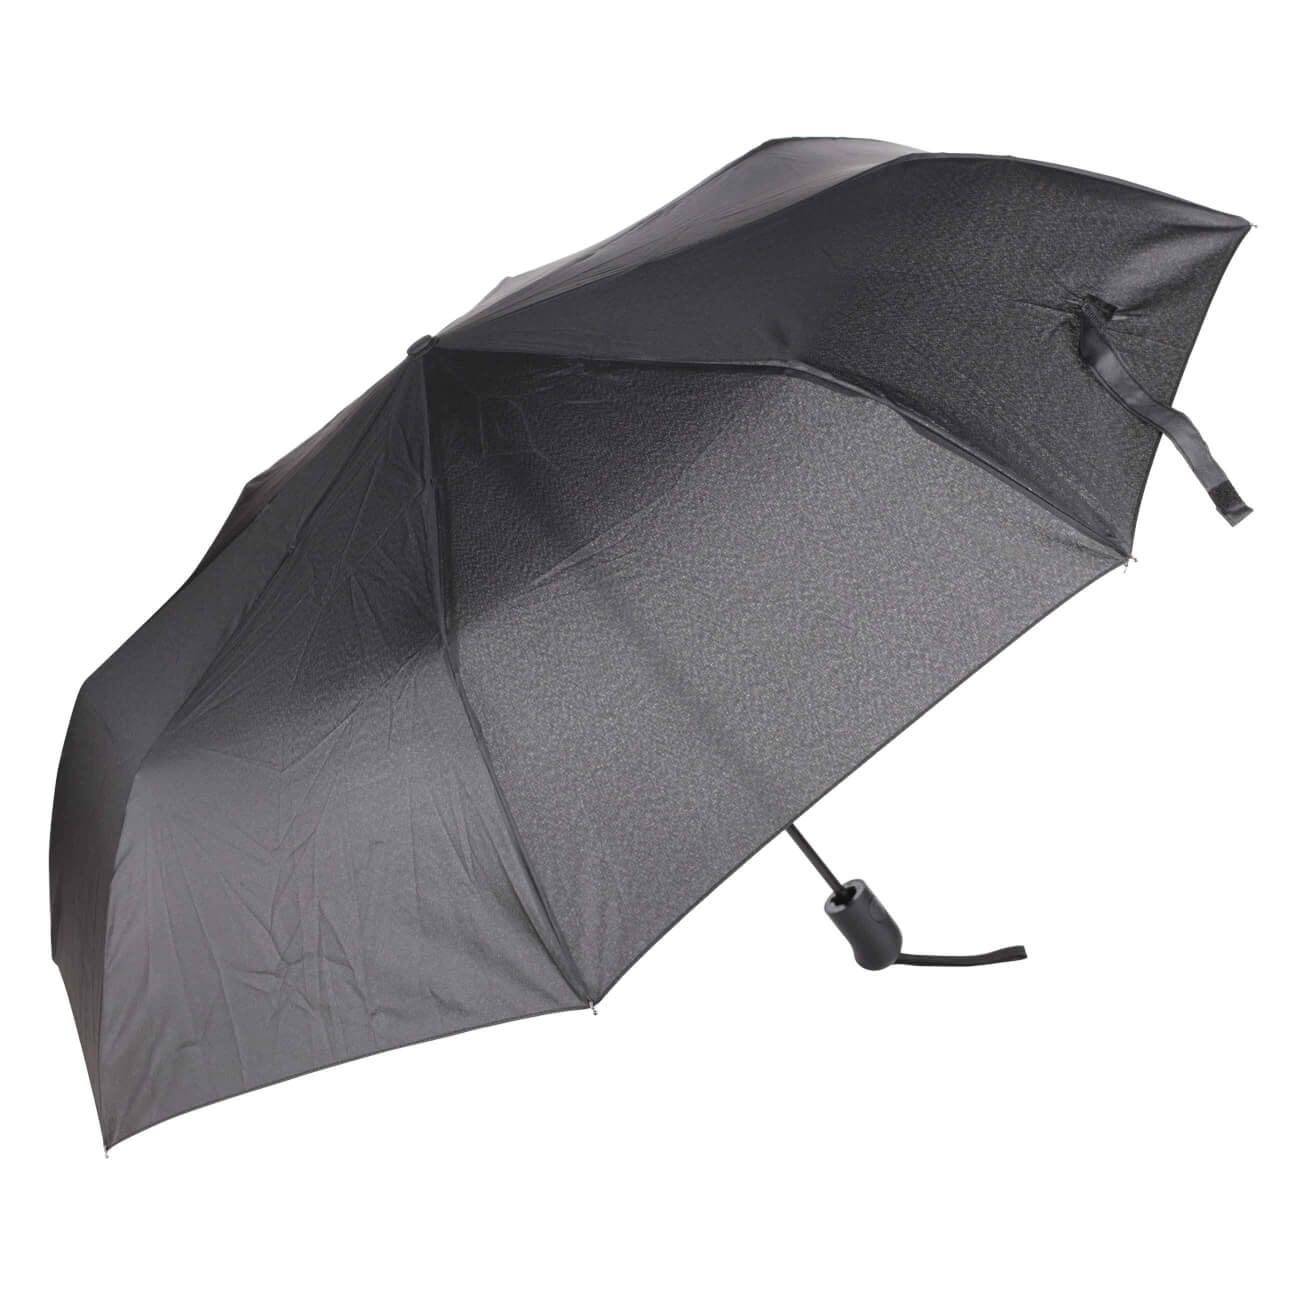 Зонт, 56 см, складной, полу-автоматический, эпонж, черный, Rainy зонт 56 см складной полу автоматический эпонж rainy